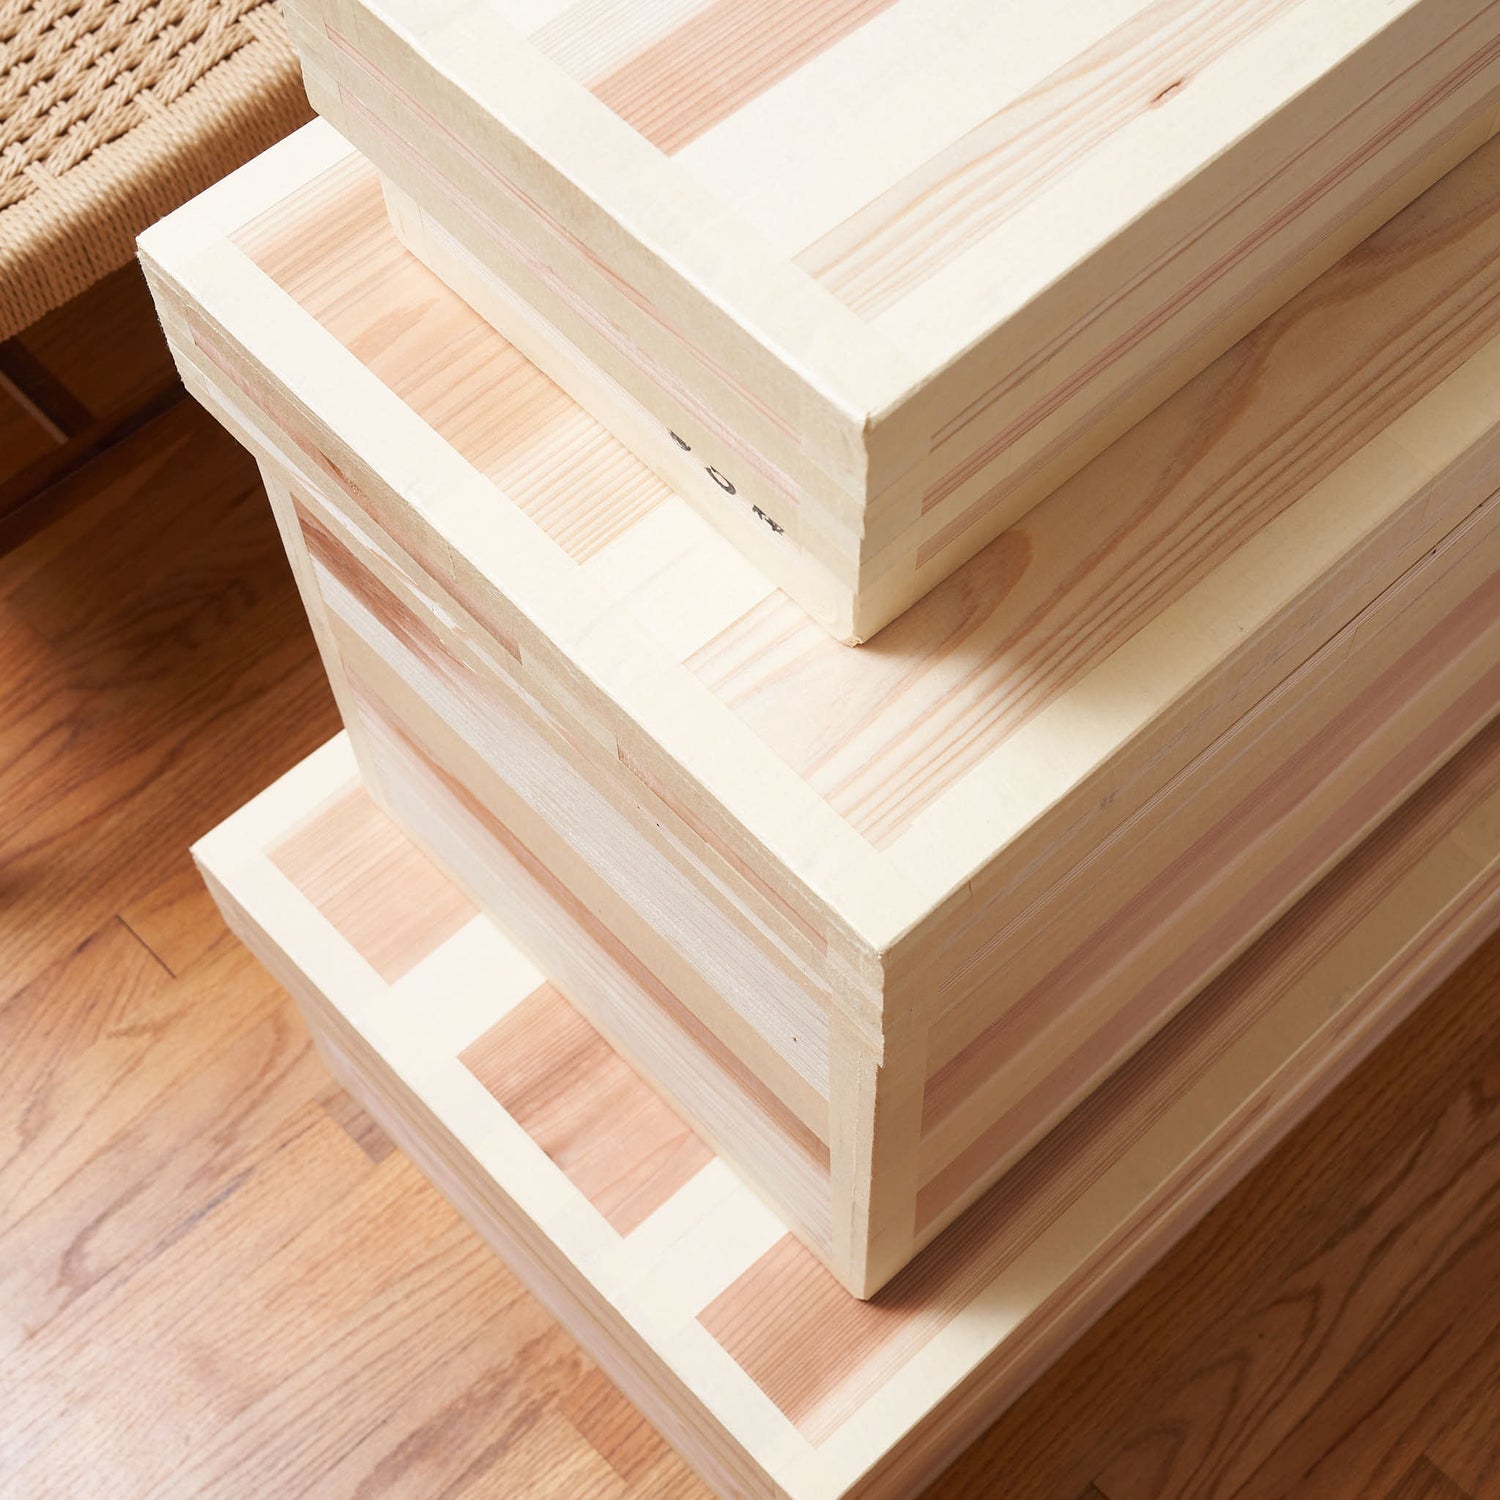 Multipurpose Cedar Storage Chest